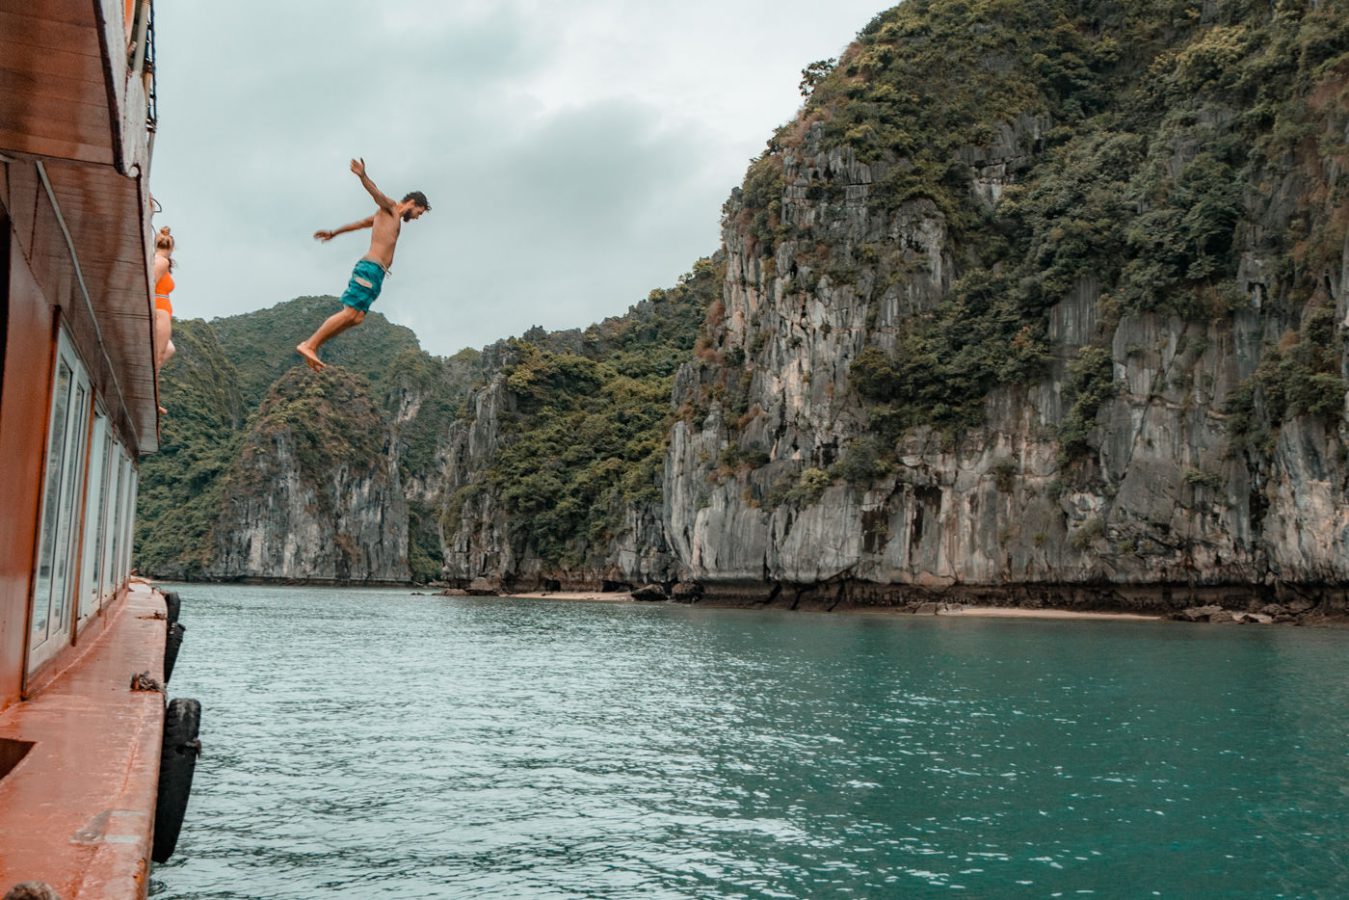 Matthias springt vom Boot in der Halong Bucht, Vietnam